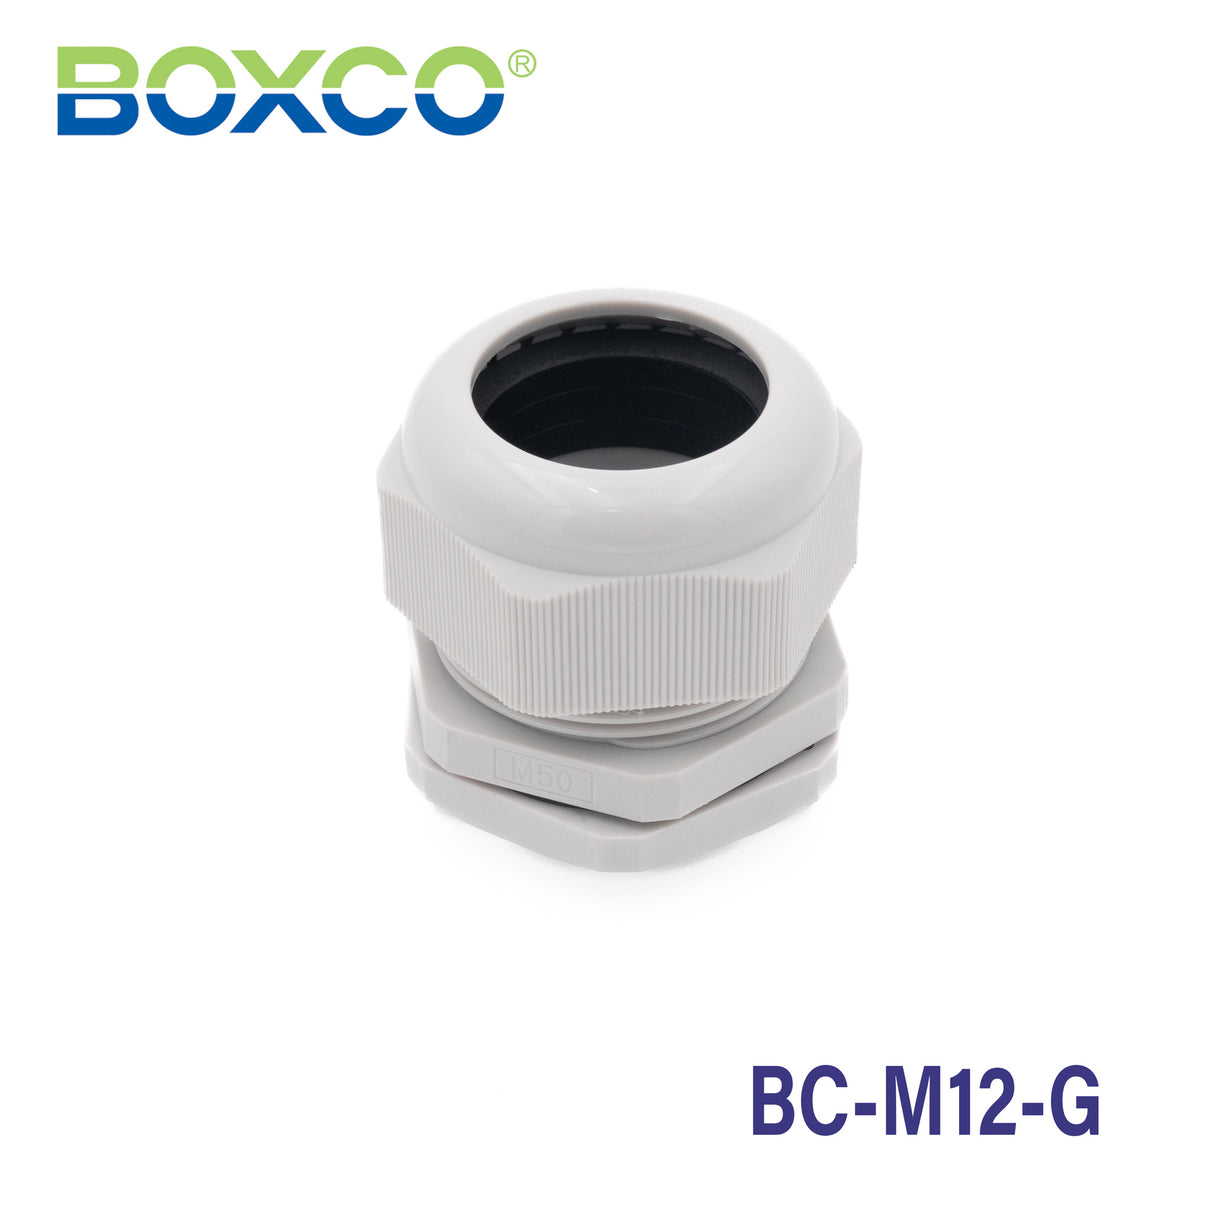 Boxco Plastic Cable Gland BC-M12-G